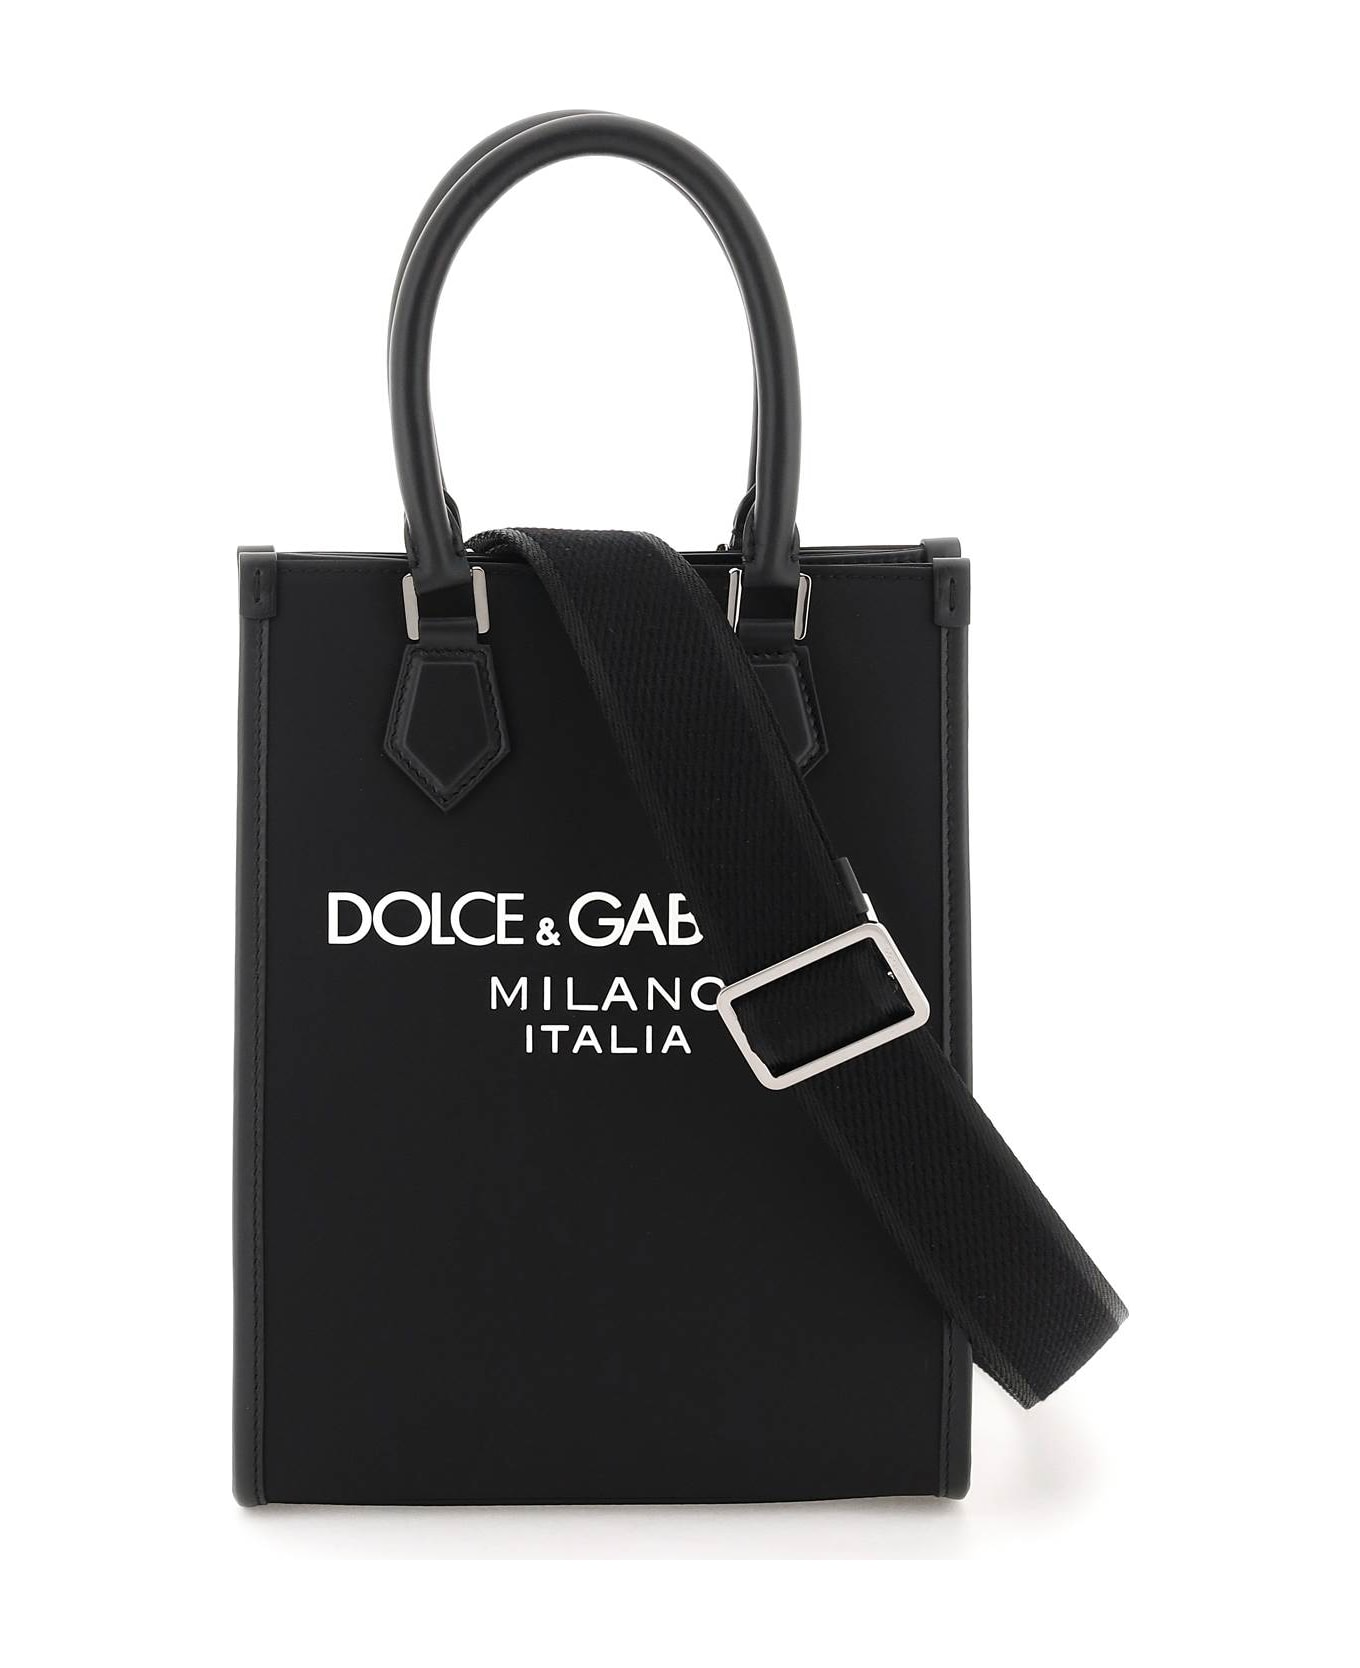 Dolce & Gabbana Small Nylon Tote Bag With Logo - Nero/nero トートバッグ